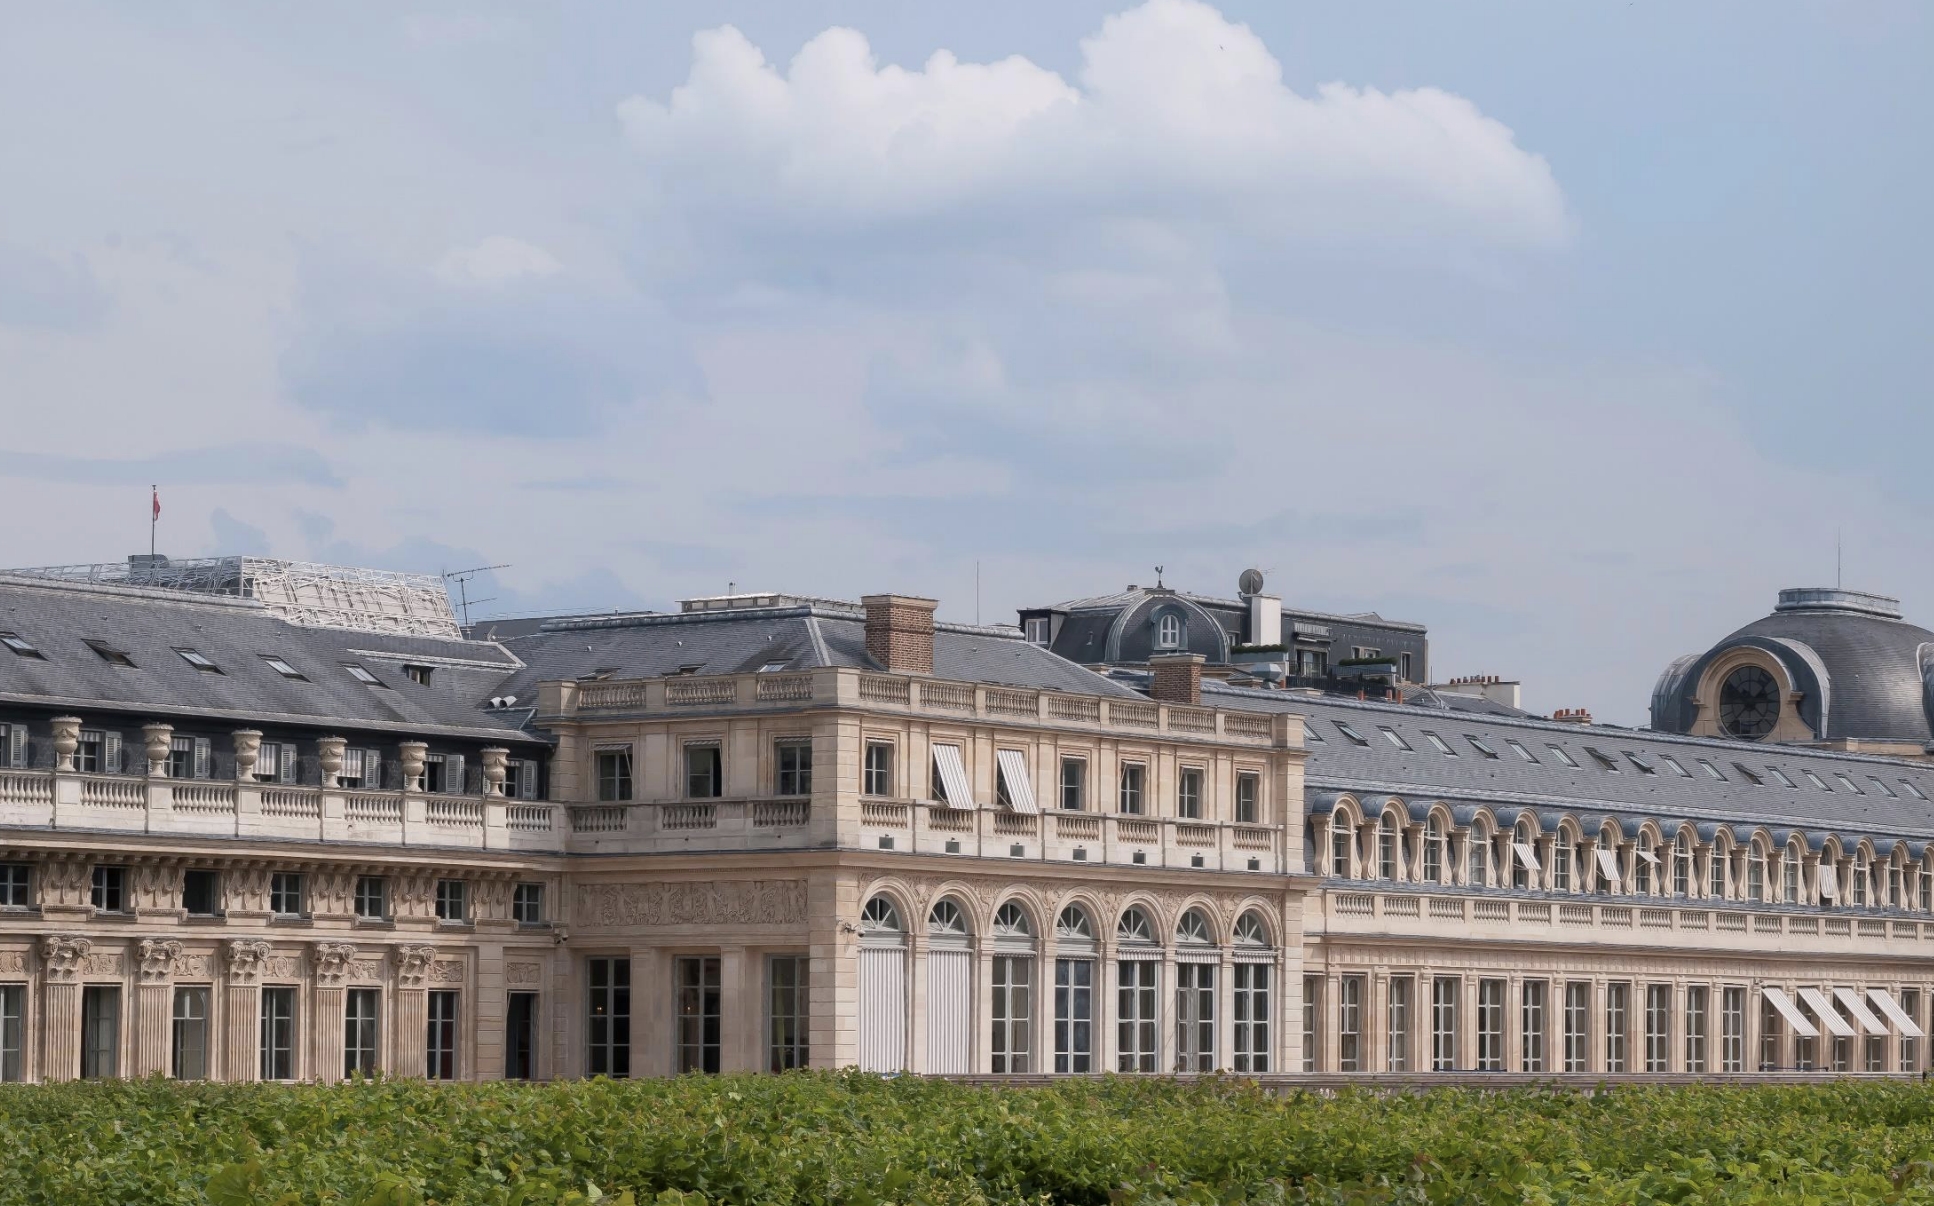 Vue de la cime des arbres palais royal paris 